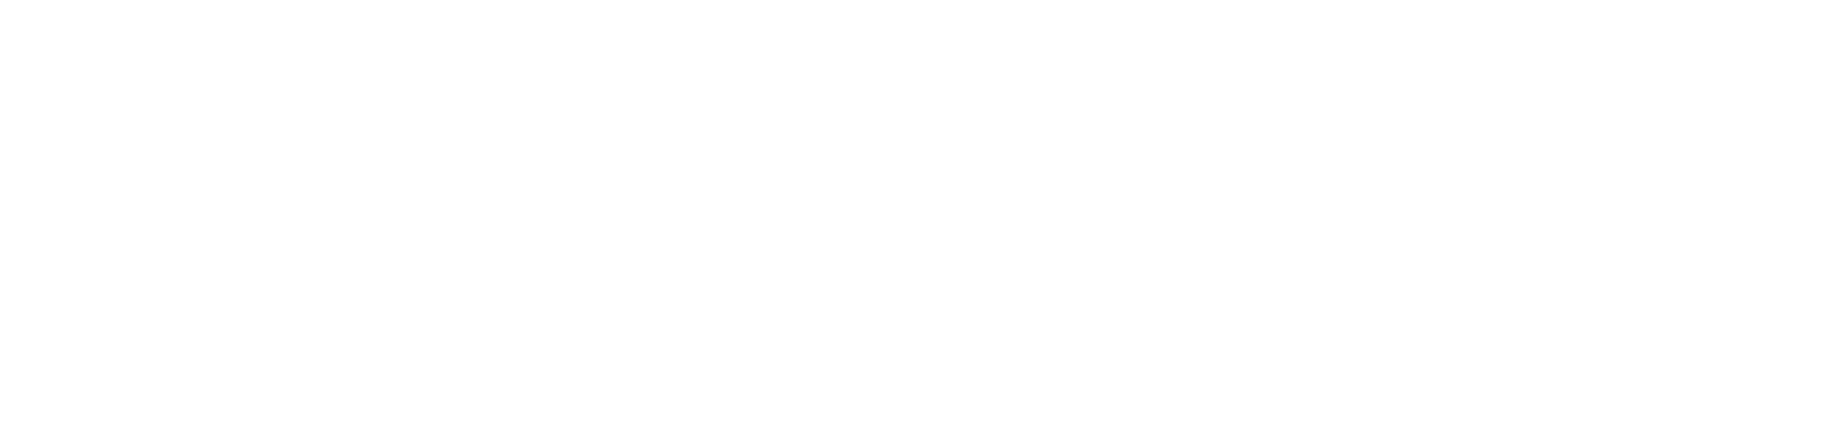 logo sansunmot